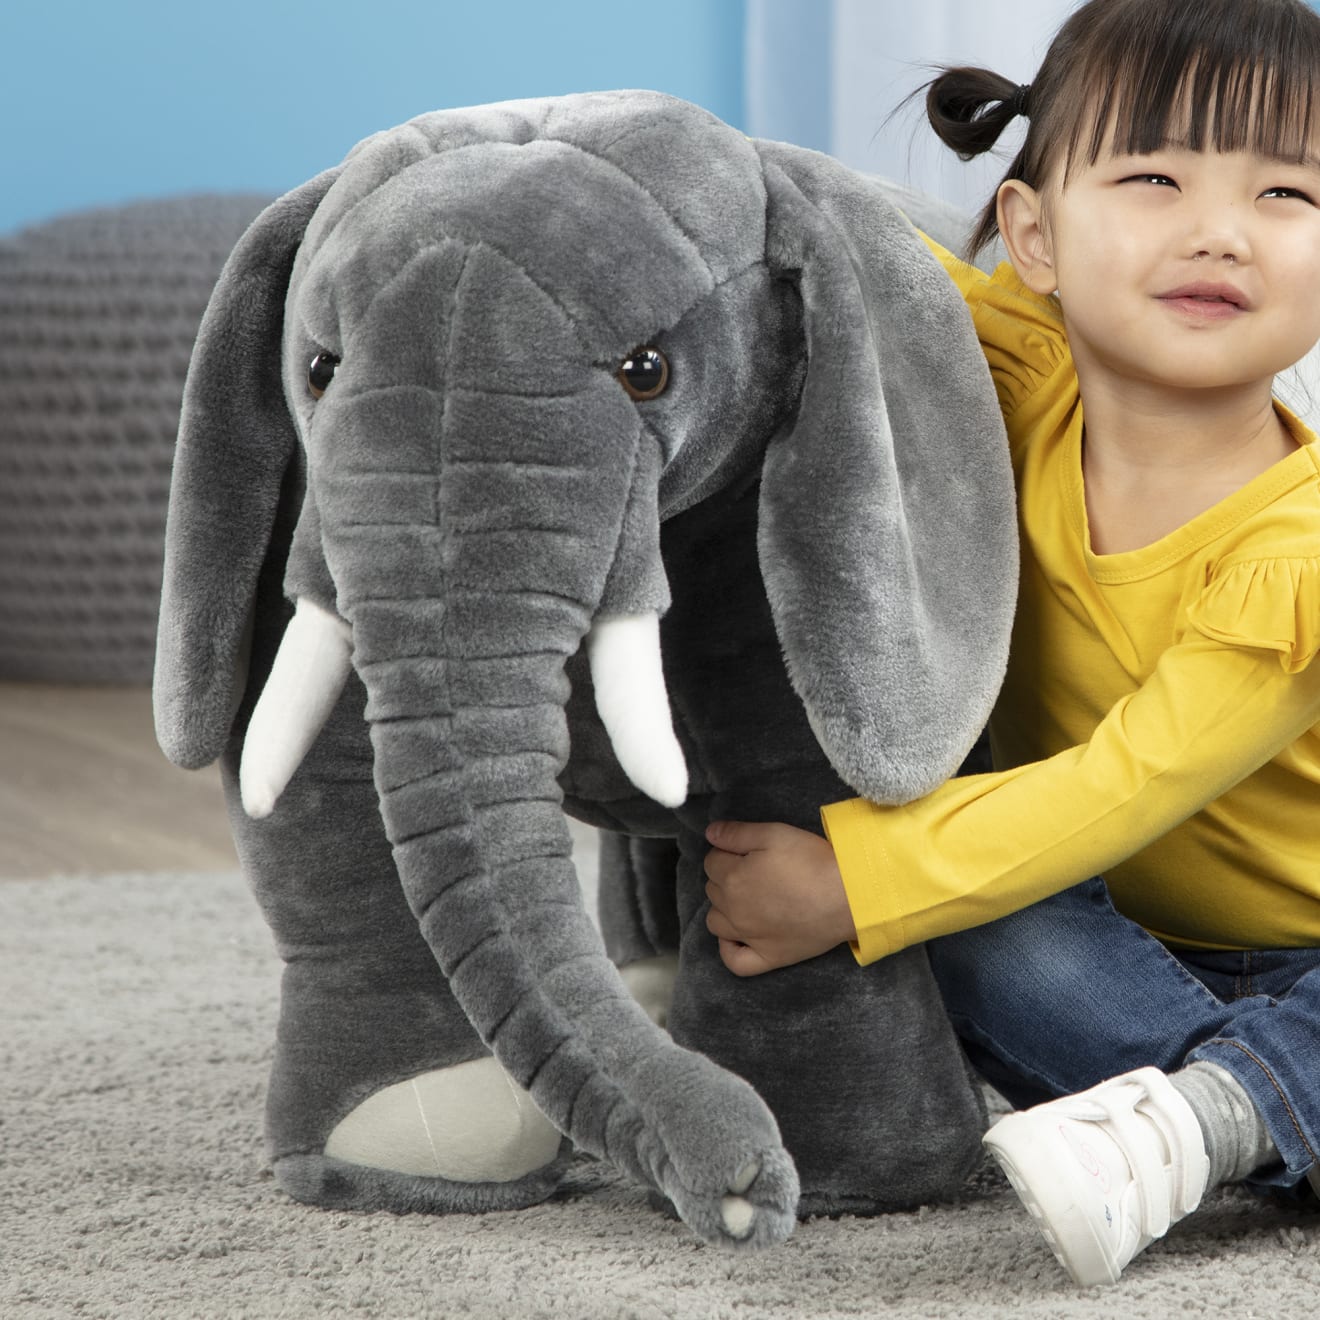 Elephant Giant Stuffed Animal | Melissa & Doug